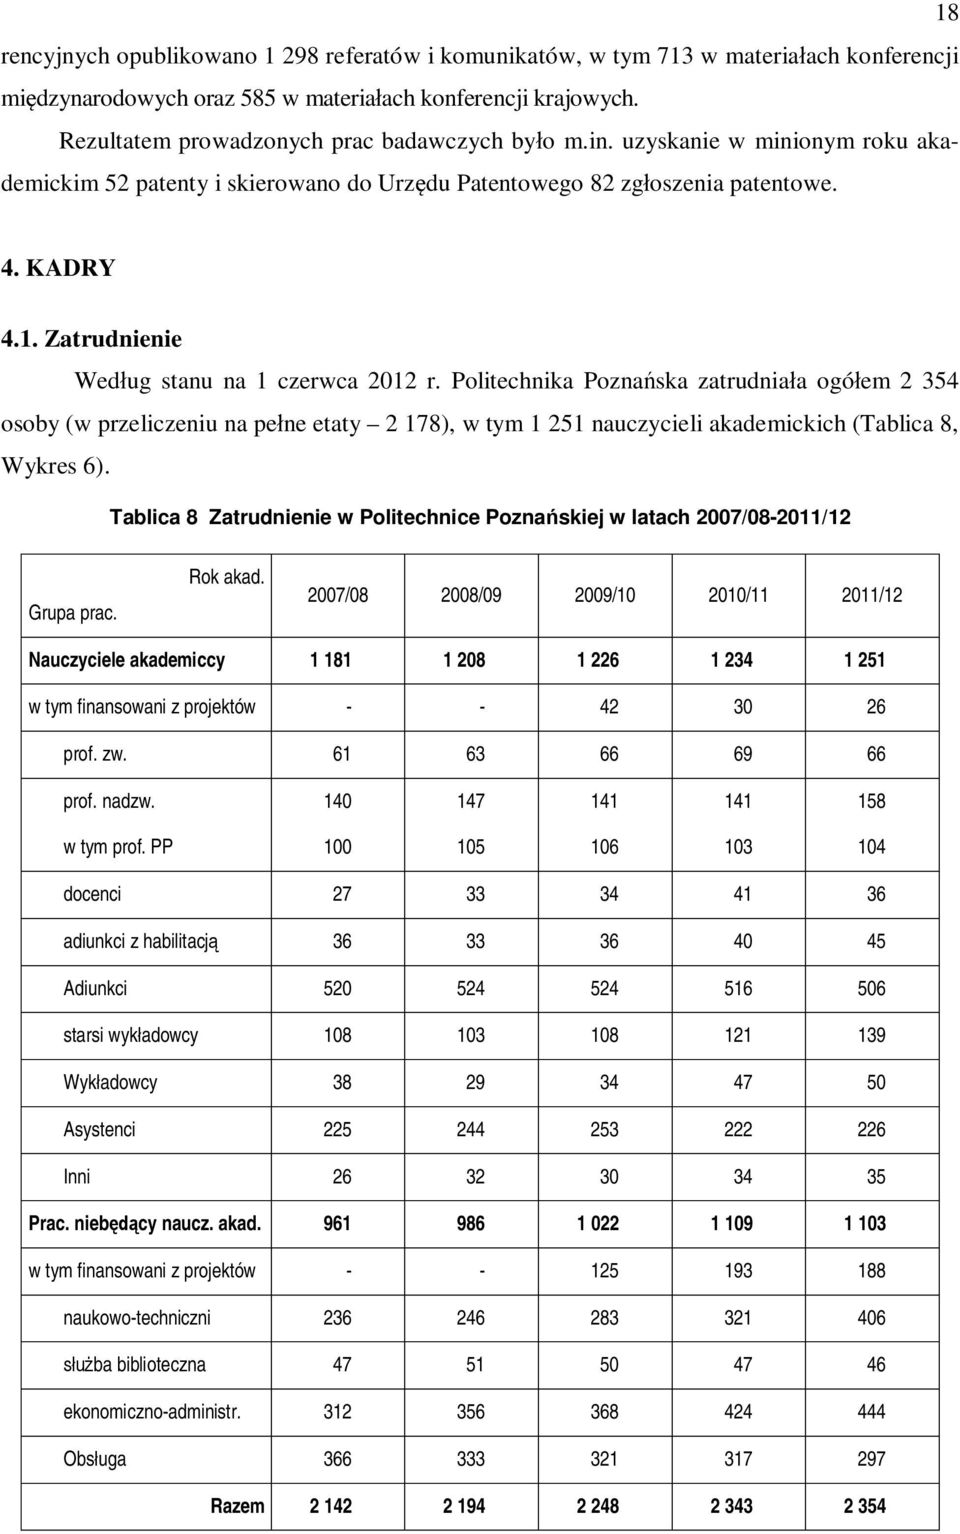 Zatrudnienie Według stanu na 1 czerwca 2012 r. Politechnika Poznańska zatrudniała ogółem 2 354 osoby (w przeliczeniu na pełne etaty 2 178), w tym 1 251 nauczycieli akademickich (Tablica 8, Wykres 6).